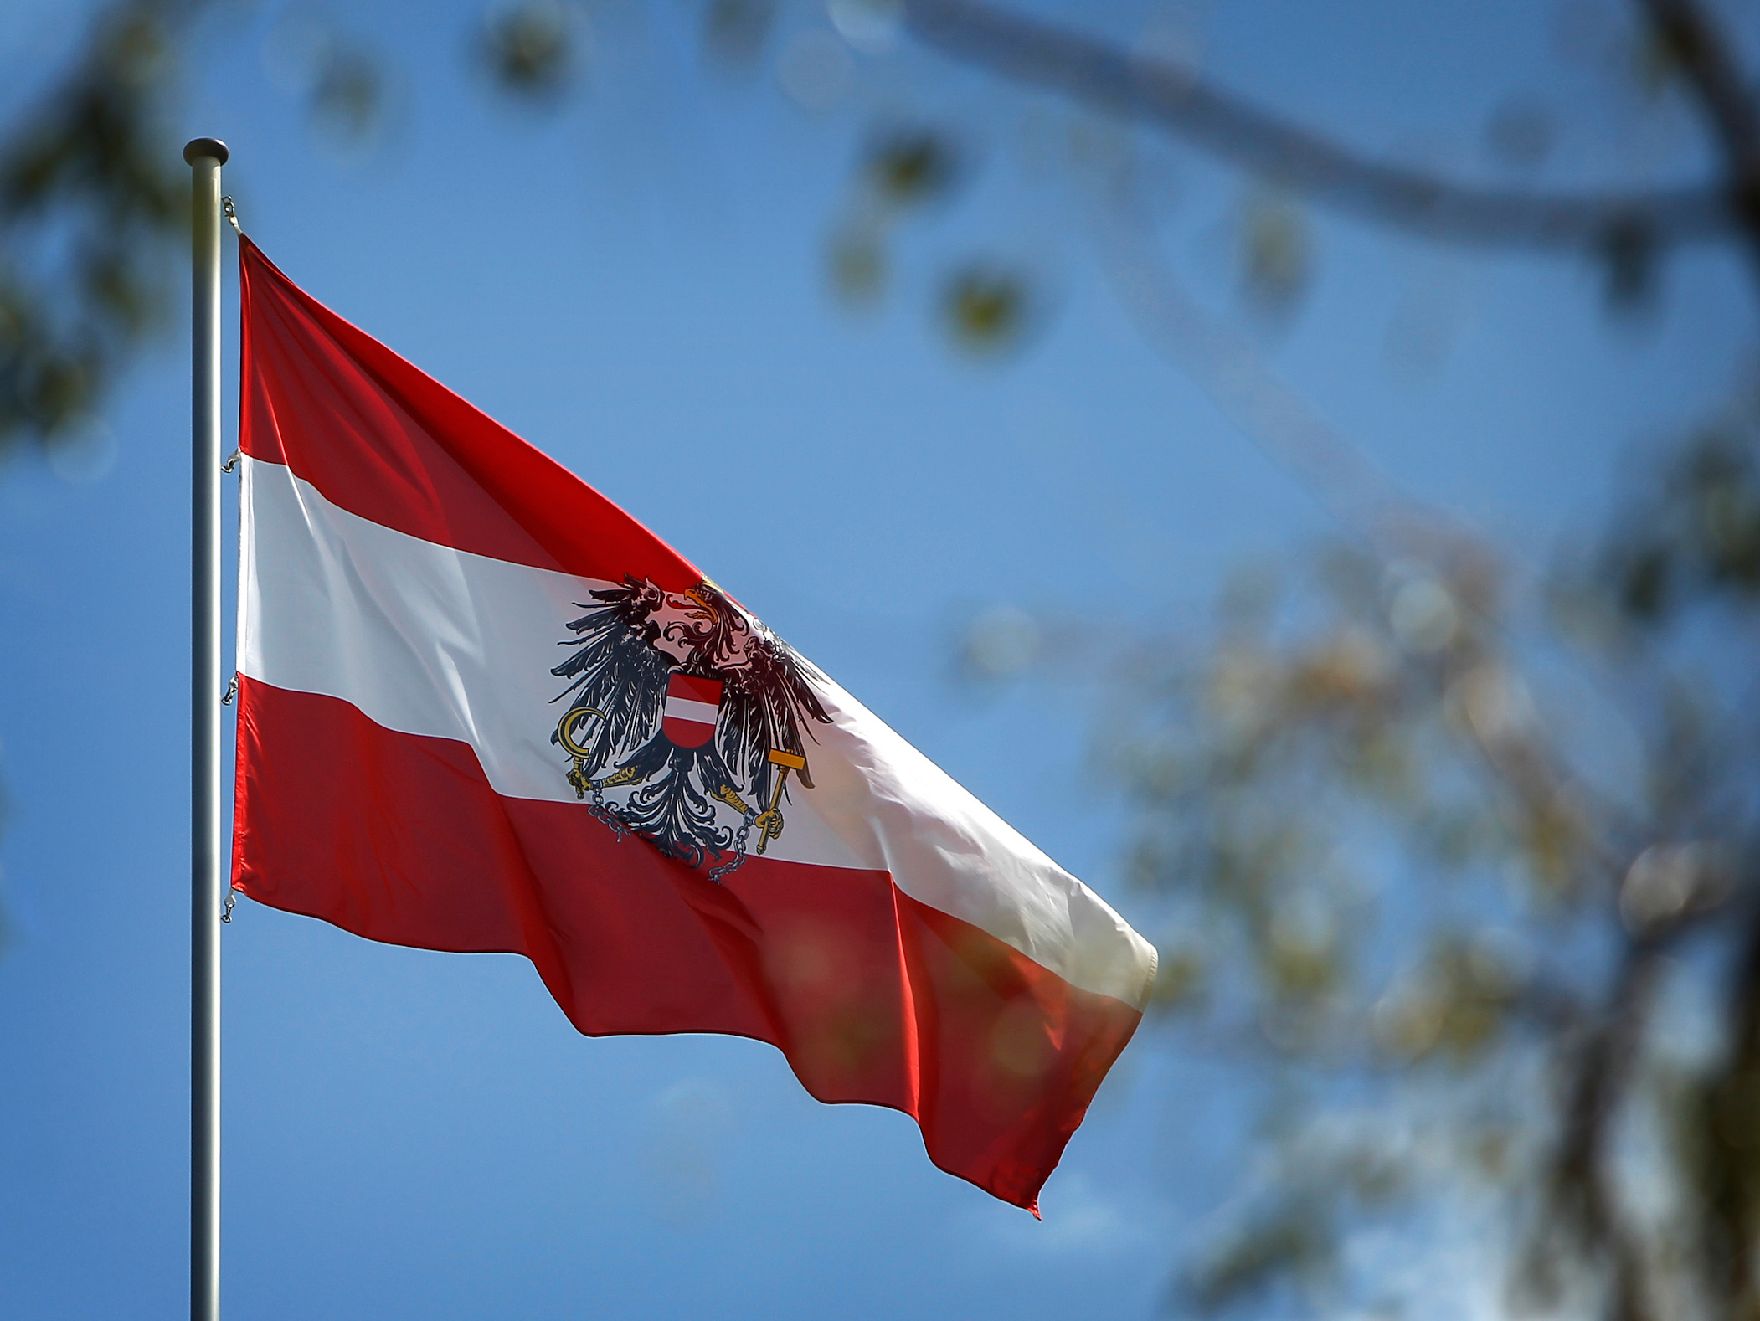 Die österreichische Fahne weht im Wind. Schlagworte: Fahne, Flagge, Himmel, Mast